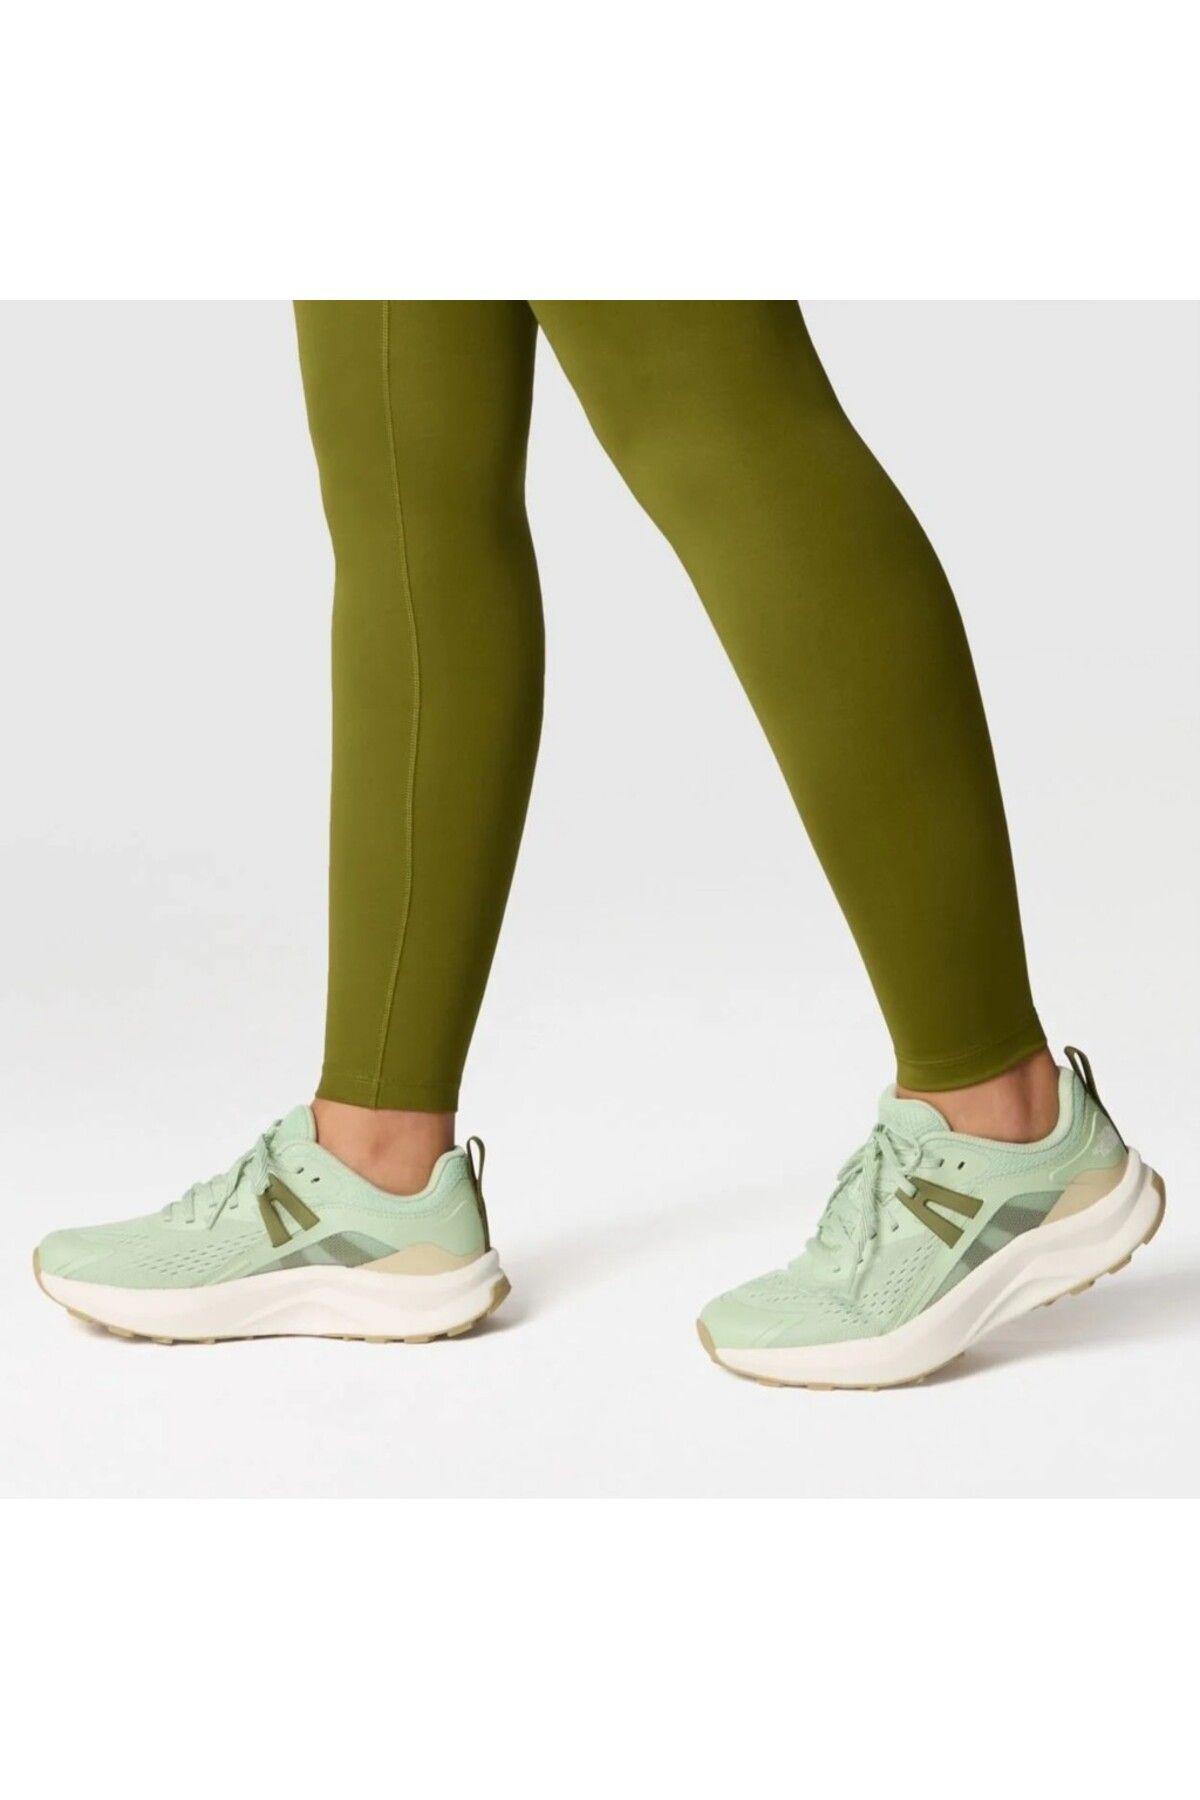 The North Face Hypnum Kadın Yeşil Spor Ayakkabı